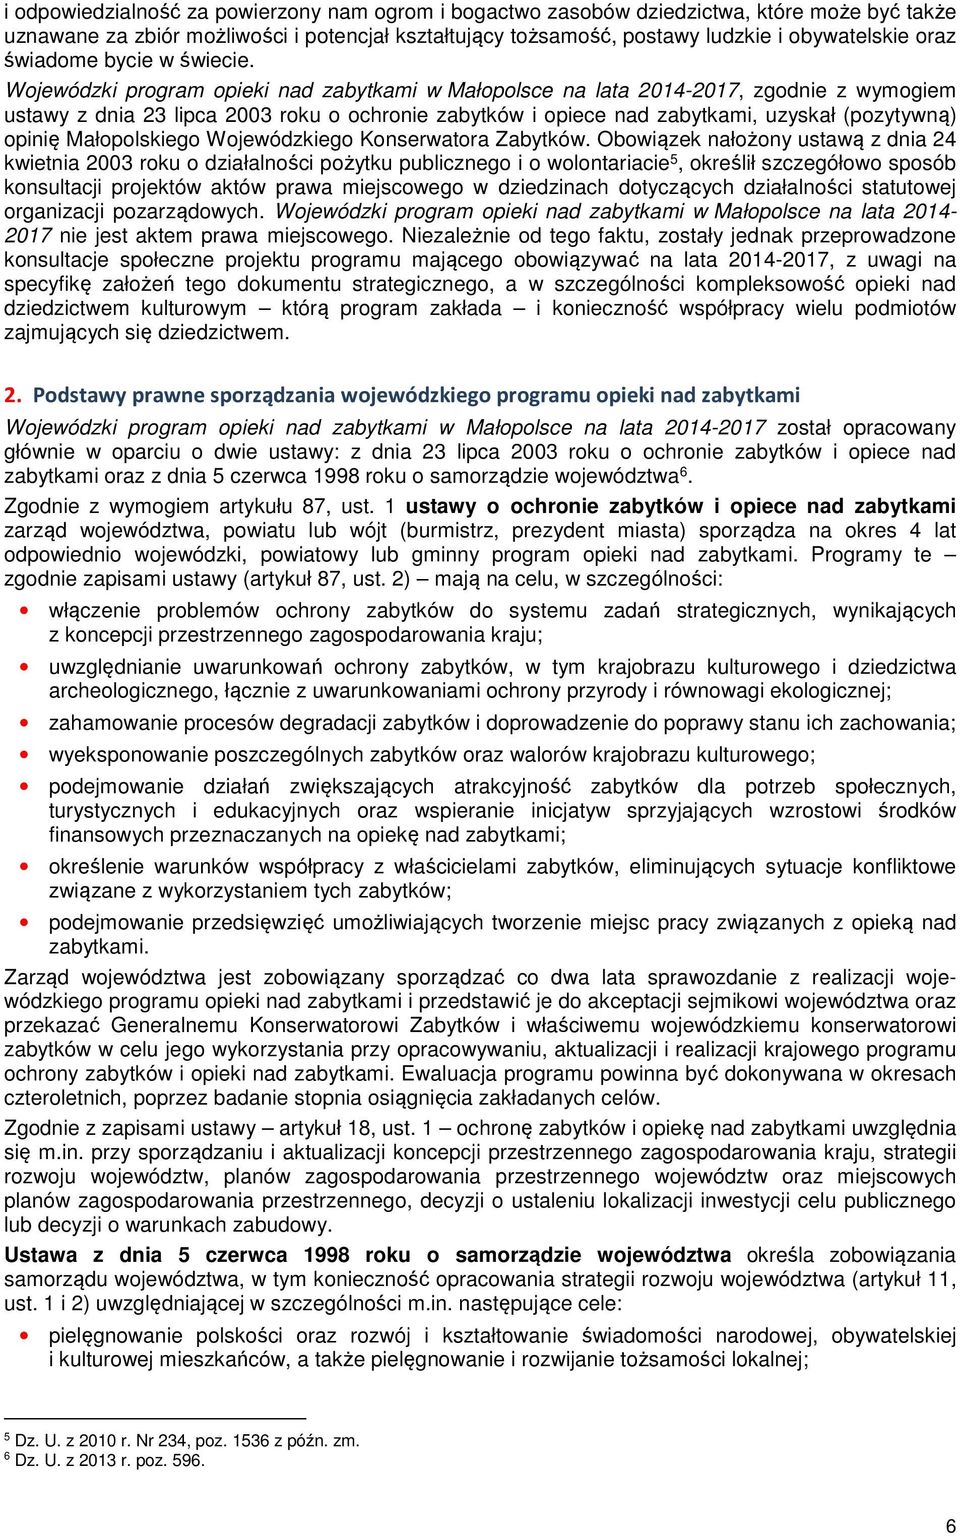 Wojewódzki program opieki nad zabytkami w Małopolsce na lata 2014-2017, zgodnie z wymogiem ustawy z dnia 23 lipca 2003 roku o ochronie zabytków i opiece nad zabytkami, uzyskał (pozytywną) opinię